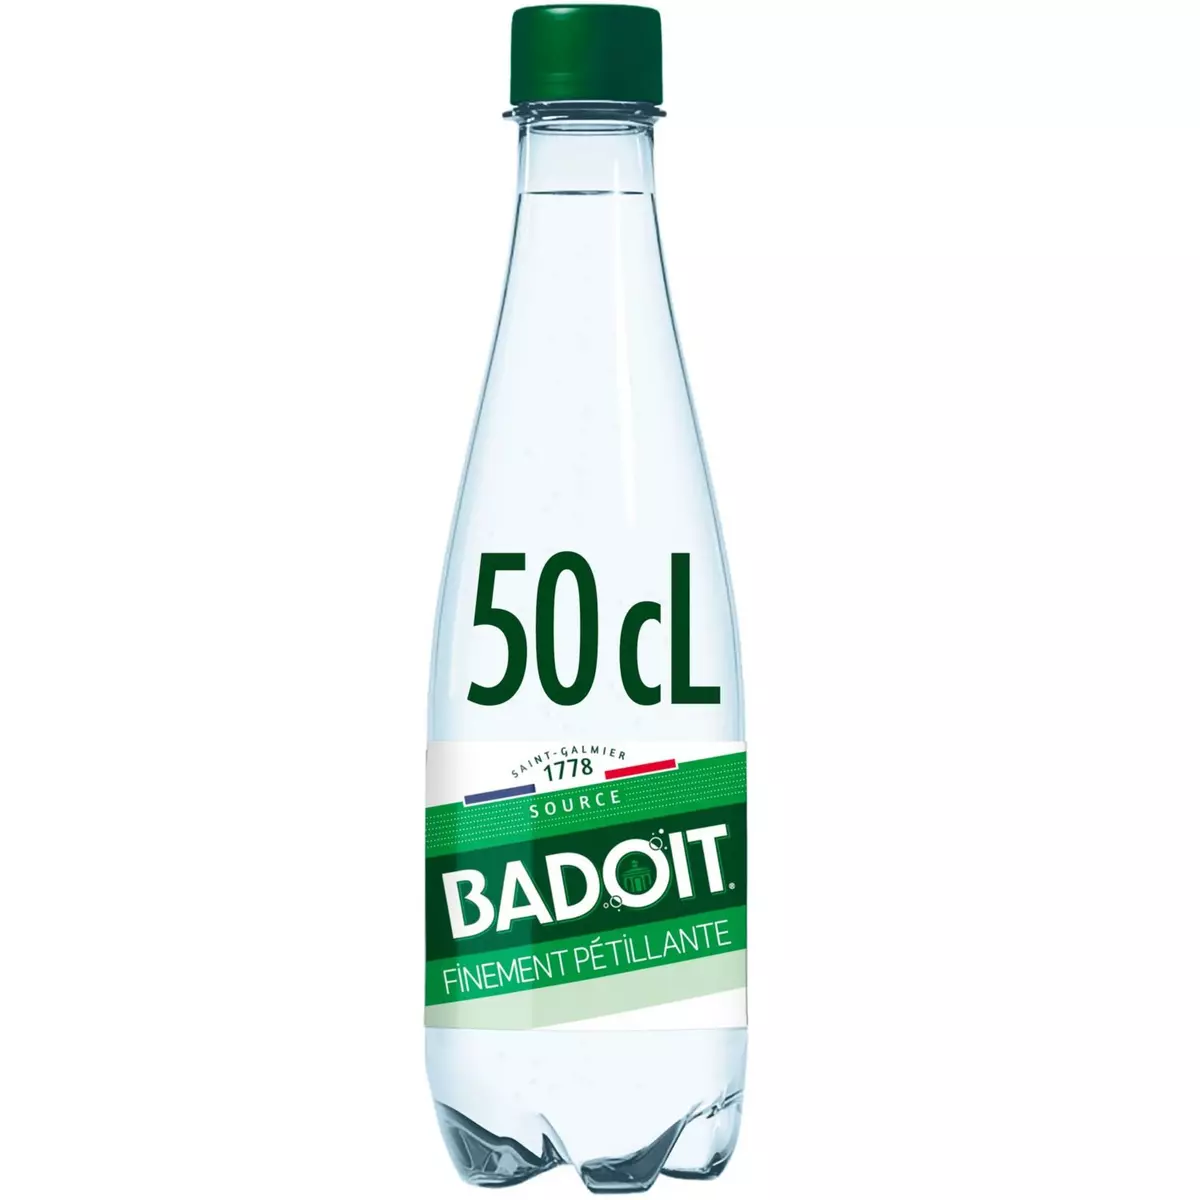 BADOIT Eau minérale gazeuse verte finement pétillante bouteille 50cl